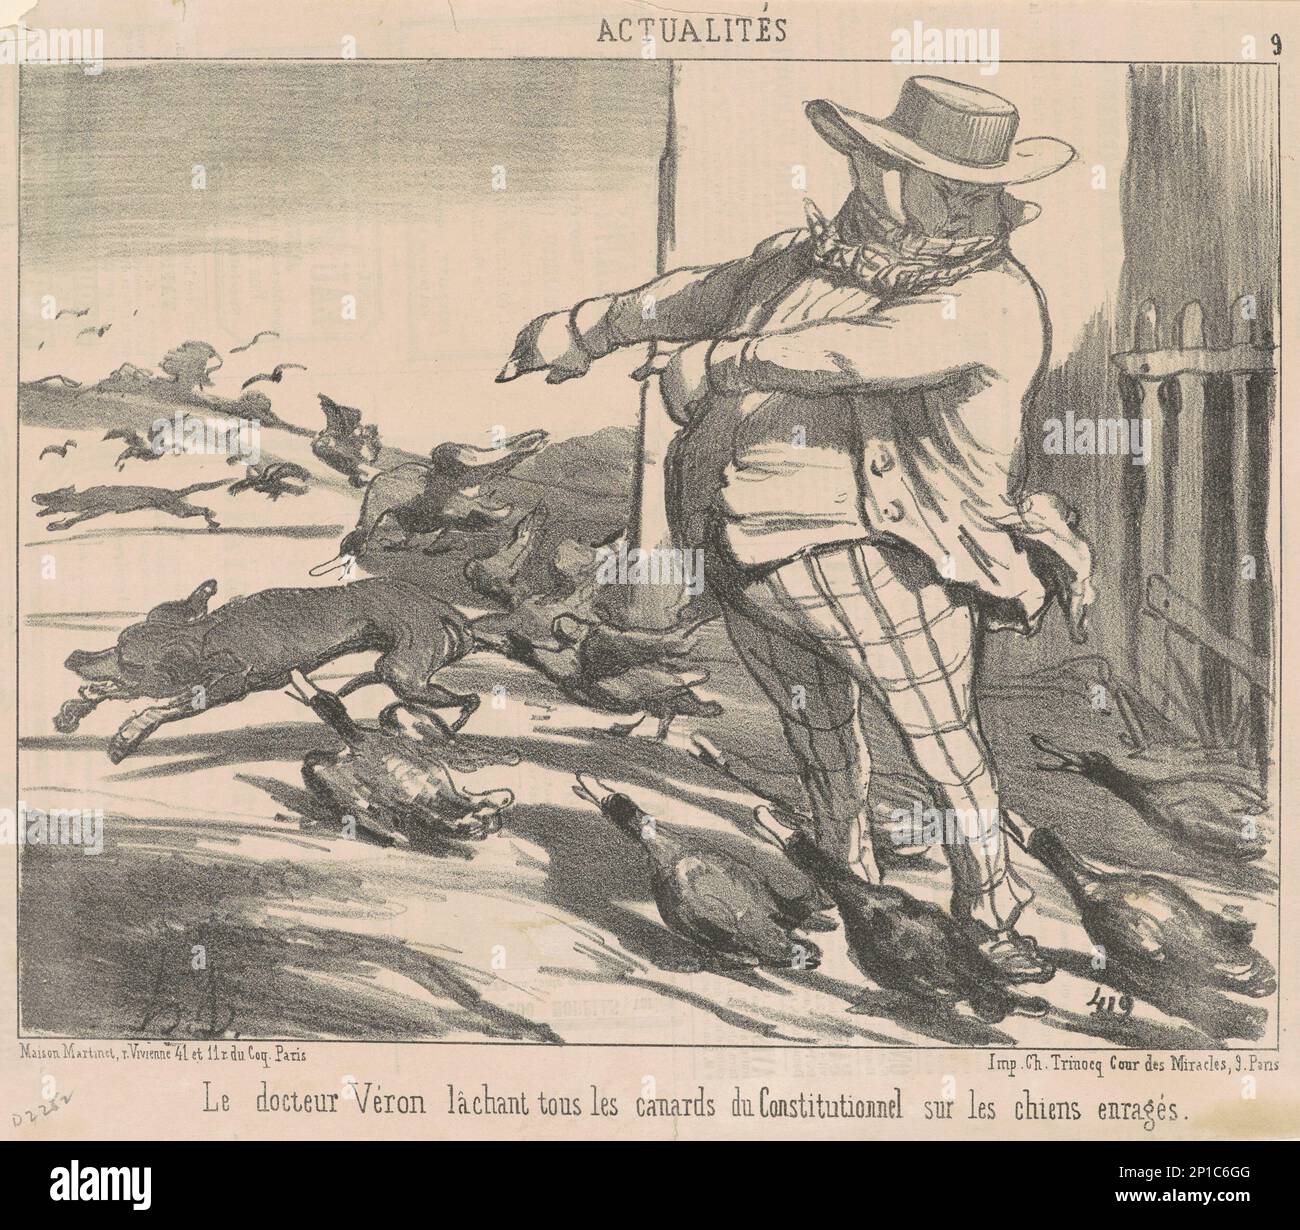 Le docteur V&#xe9;ron laquant tous les canards ..., 19th Century.Dr. V&#xe9;ron retombe tous les canards... Banque D'Images